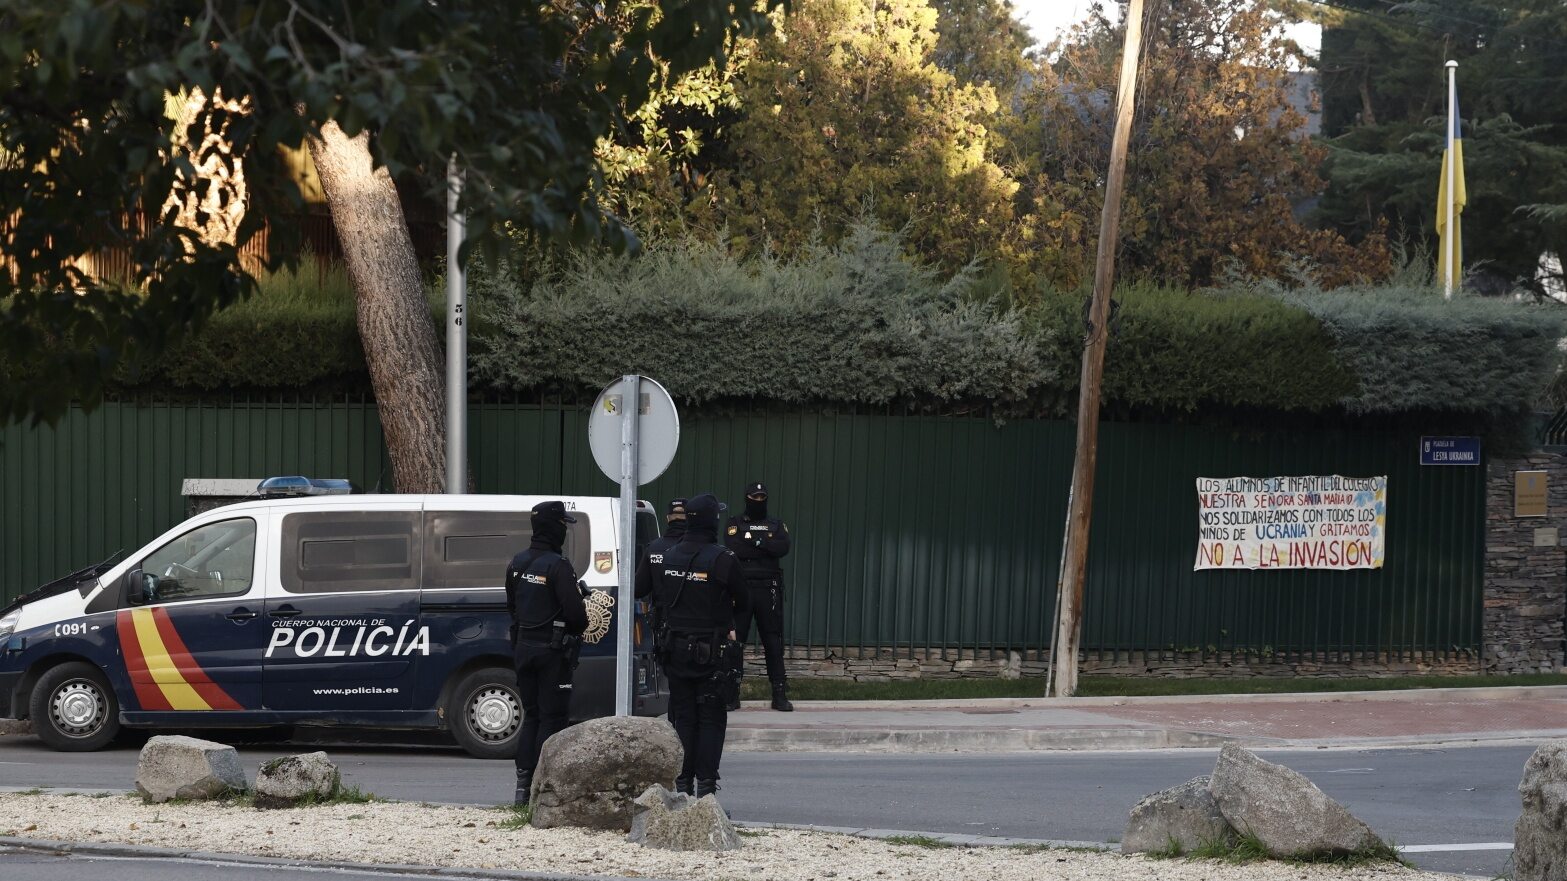 Más amenazas contra diplomáticos ucranianos.  Policía española intercepta sobres sospechosos – Wprost